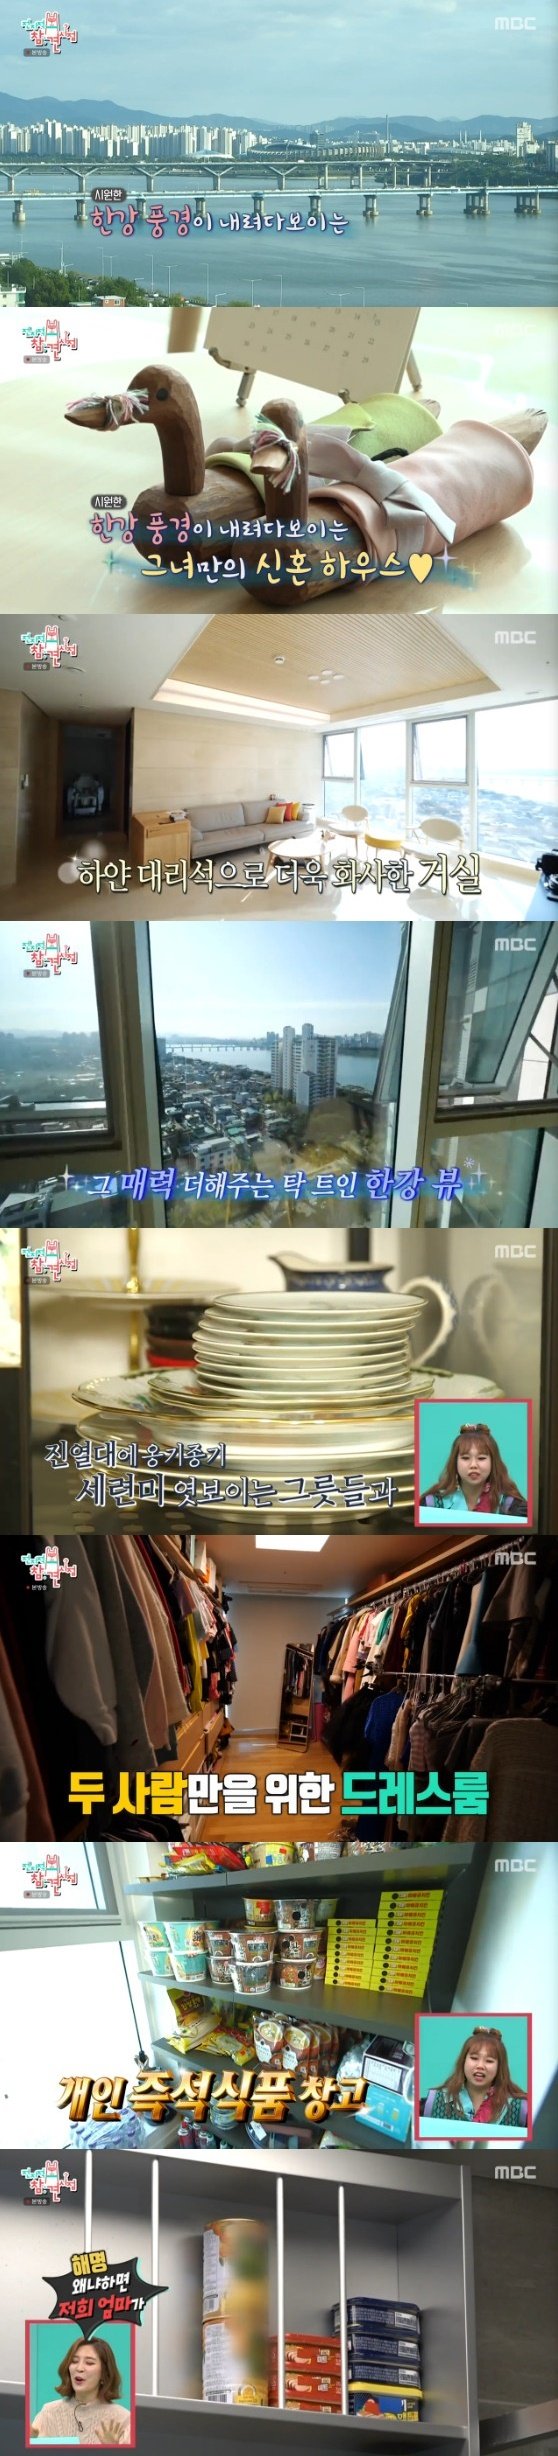 MBC '전지적 참견 시점' 방송 화면 캡처 © 뉴스1